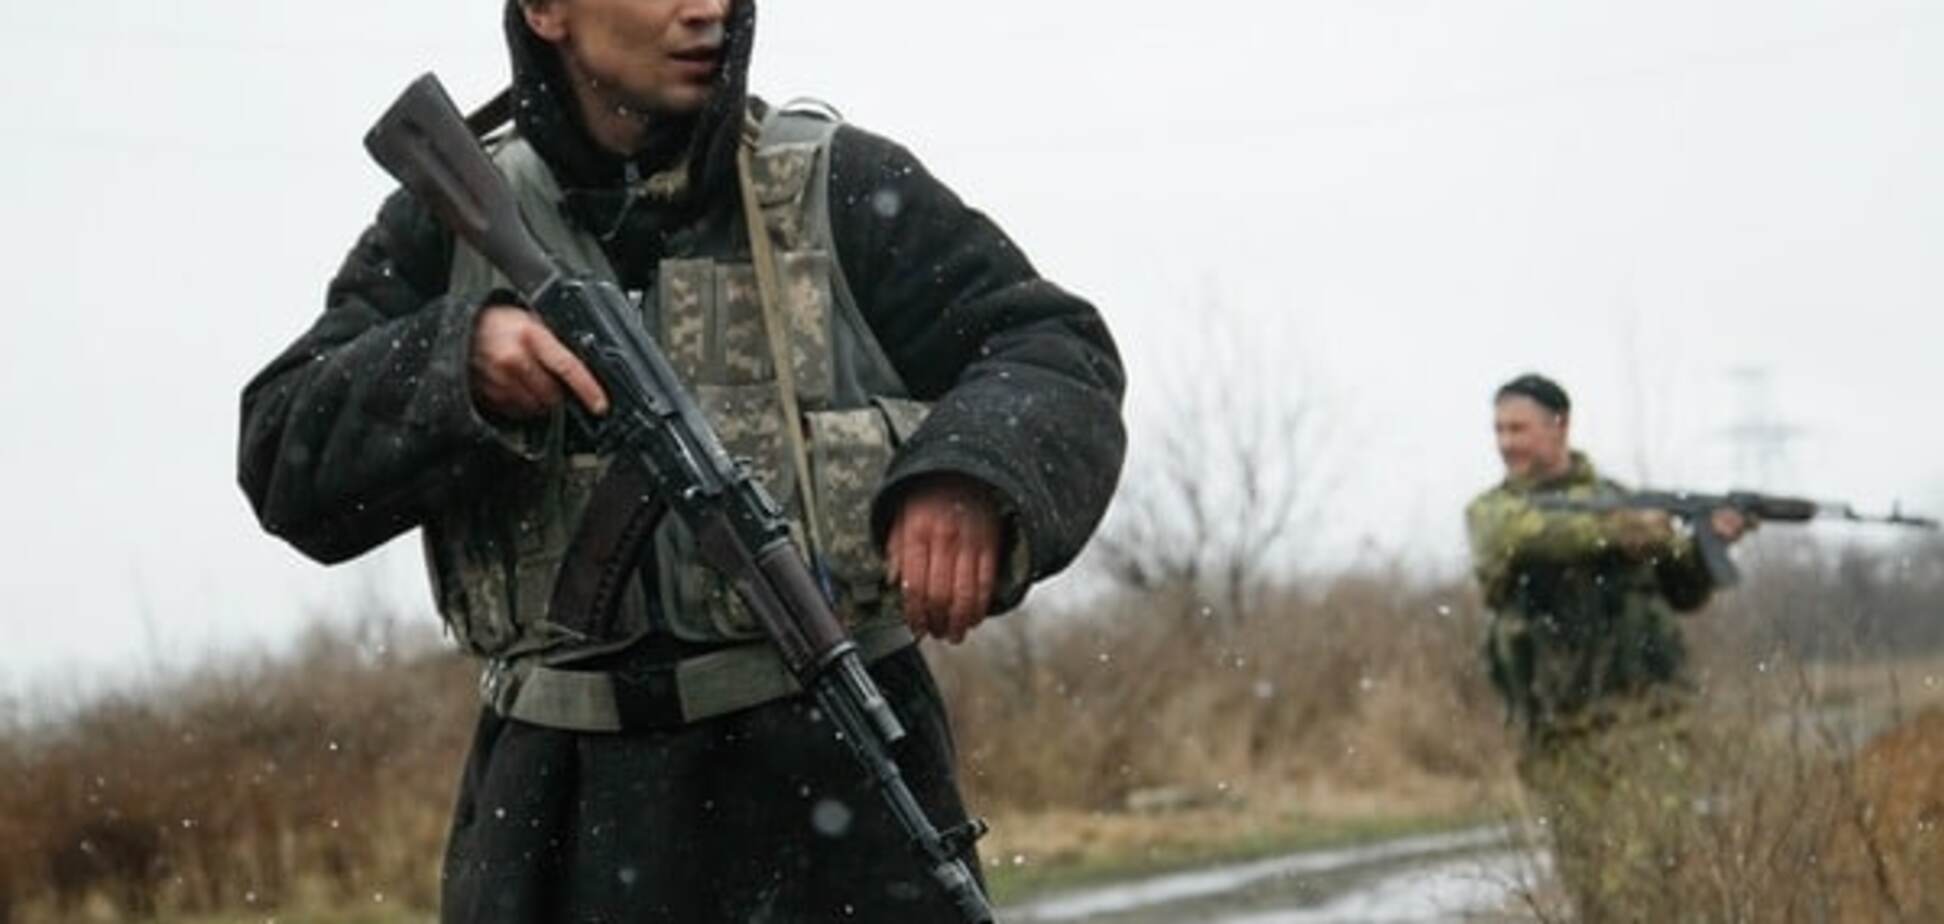 Загострення ситуації в зоні АТО: українських бійців обстріляли поблизу Авдіївки